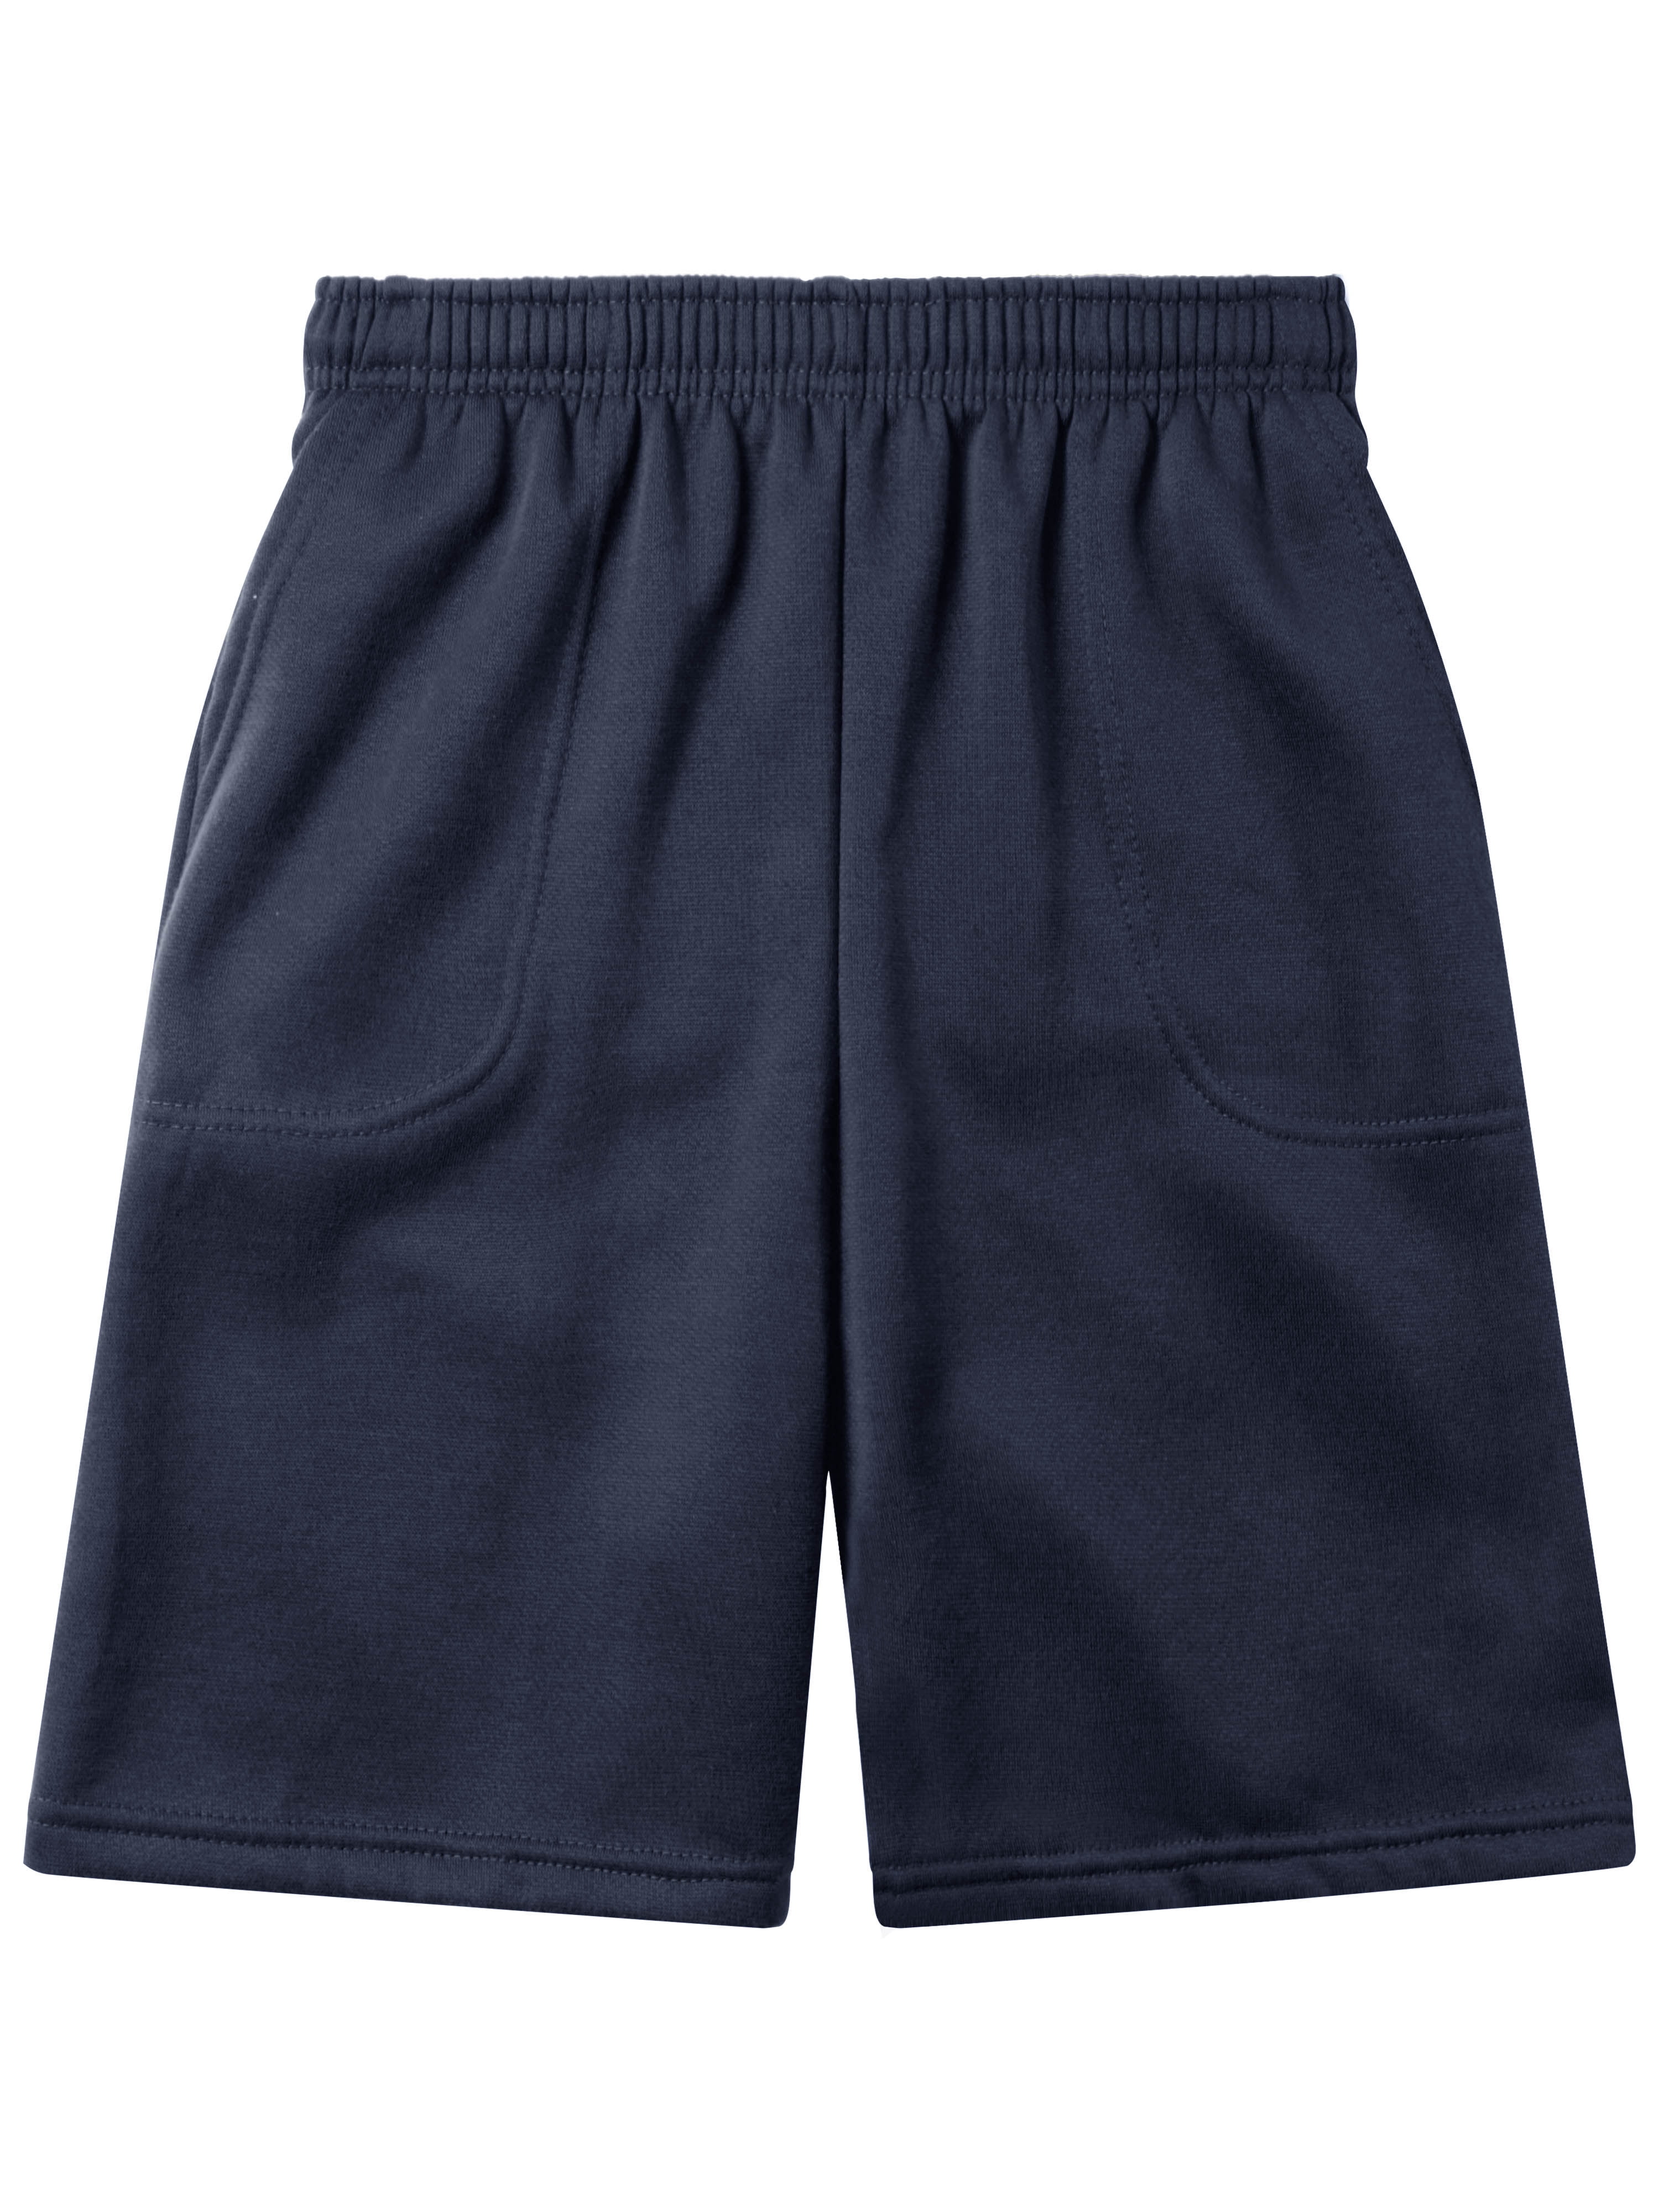 M/&S Para Hombre Berry Rojo de secado rápido Shorts de baño 3XL 45-47/" W ajustable de la cintura 3 bolsillos